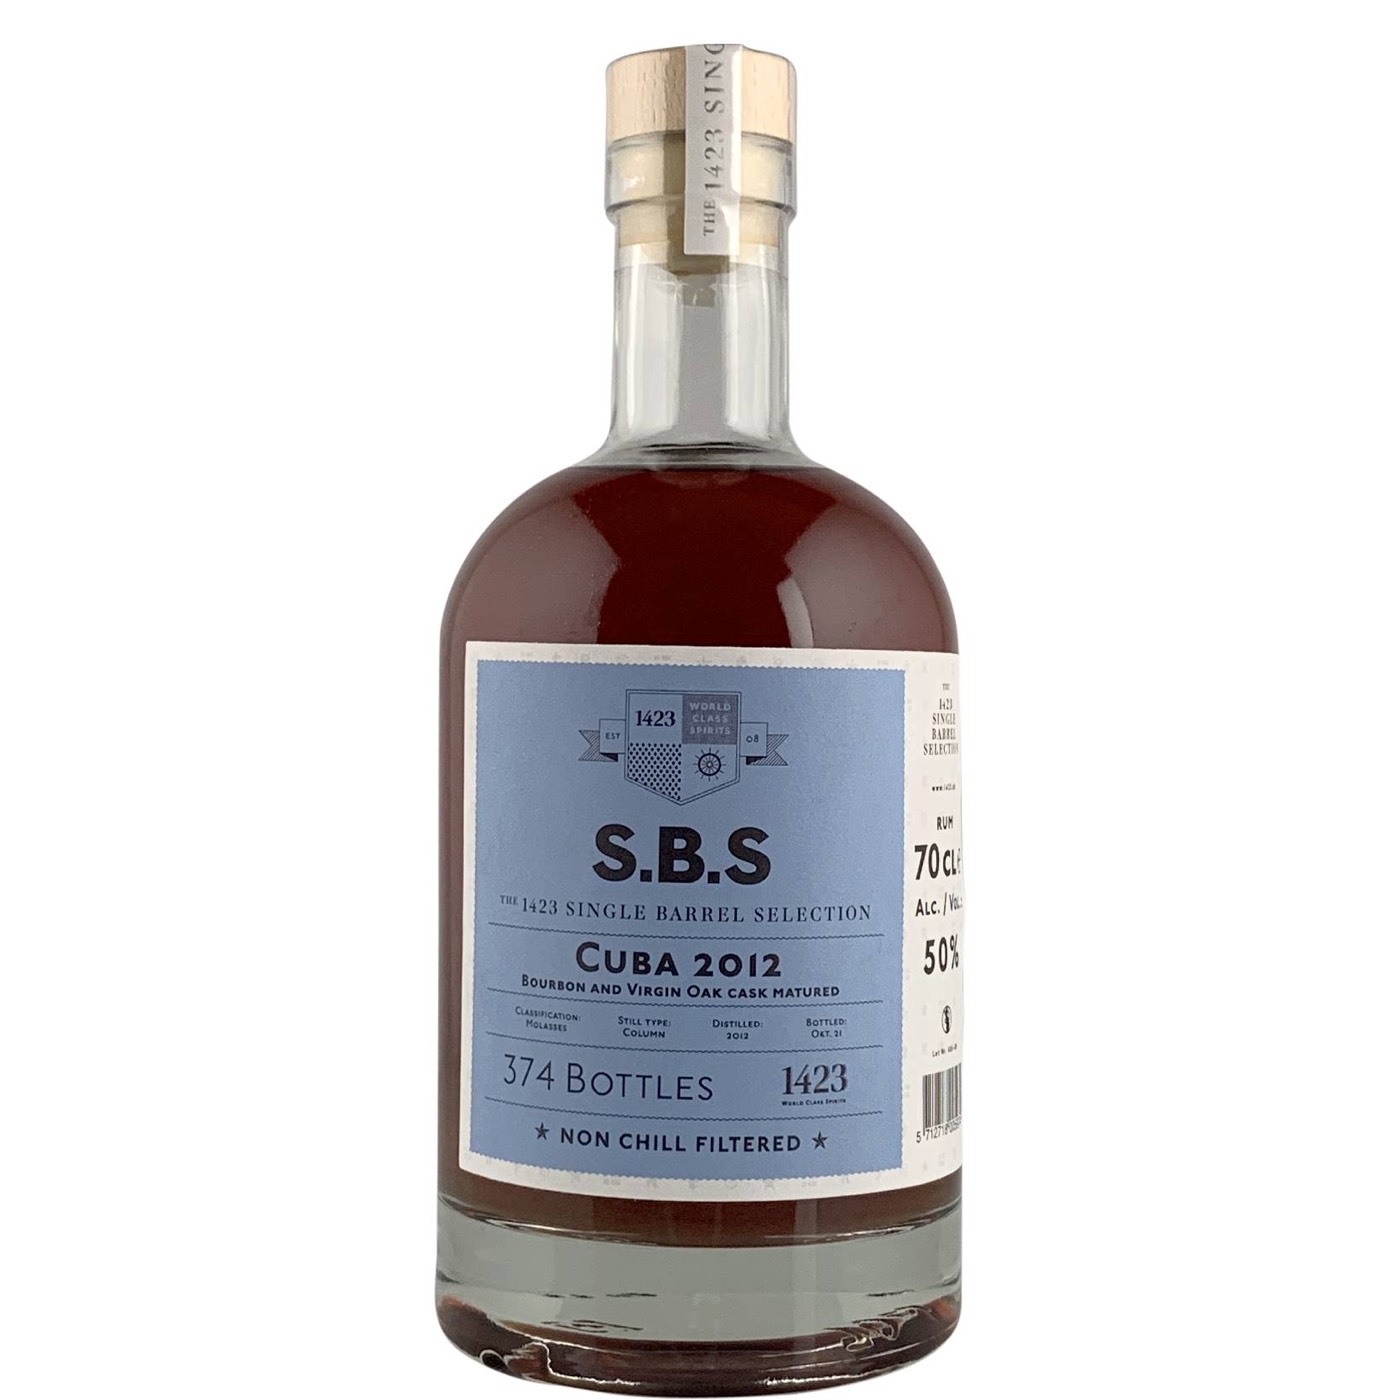 Bottle image of S.B.S Cuba